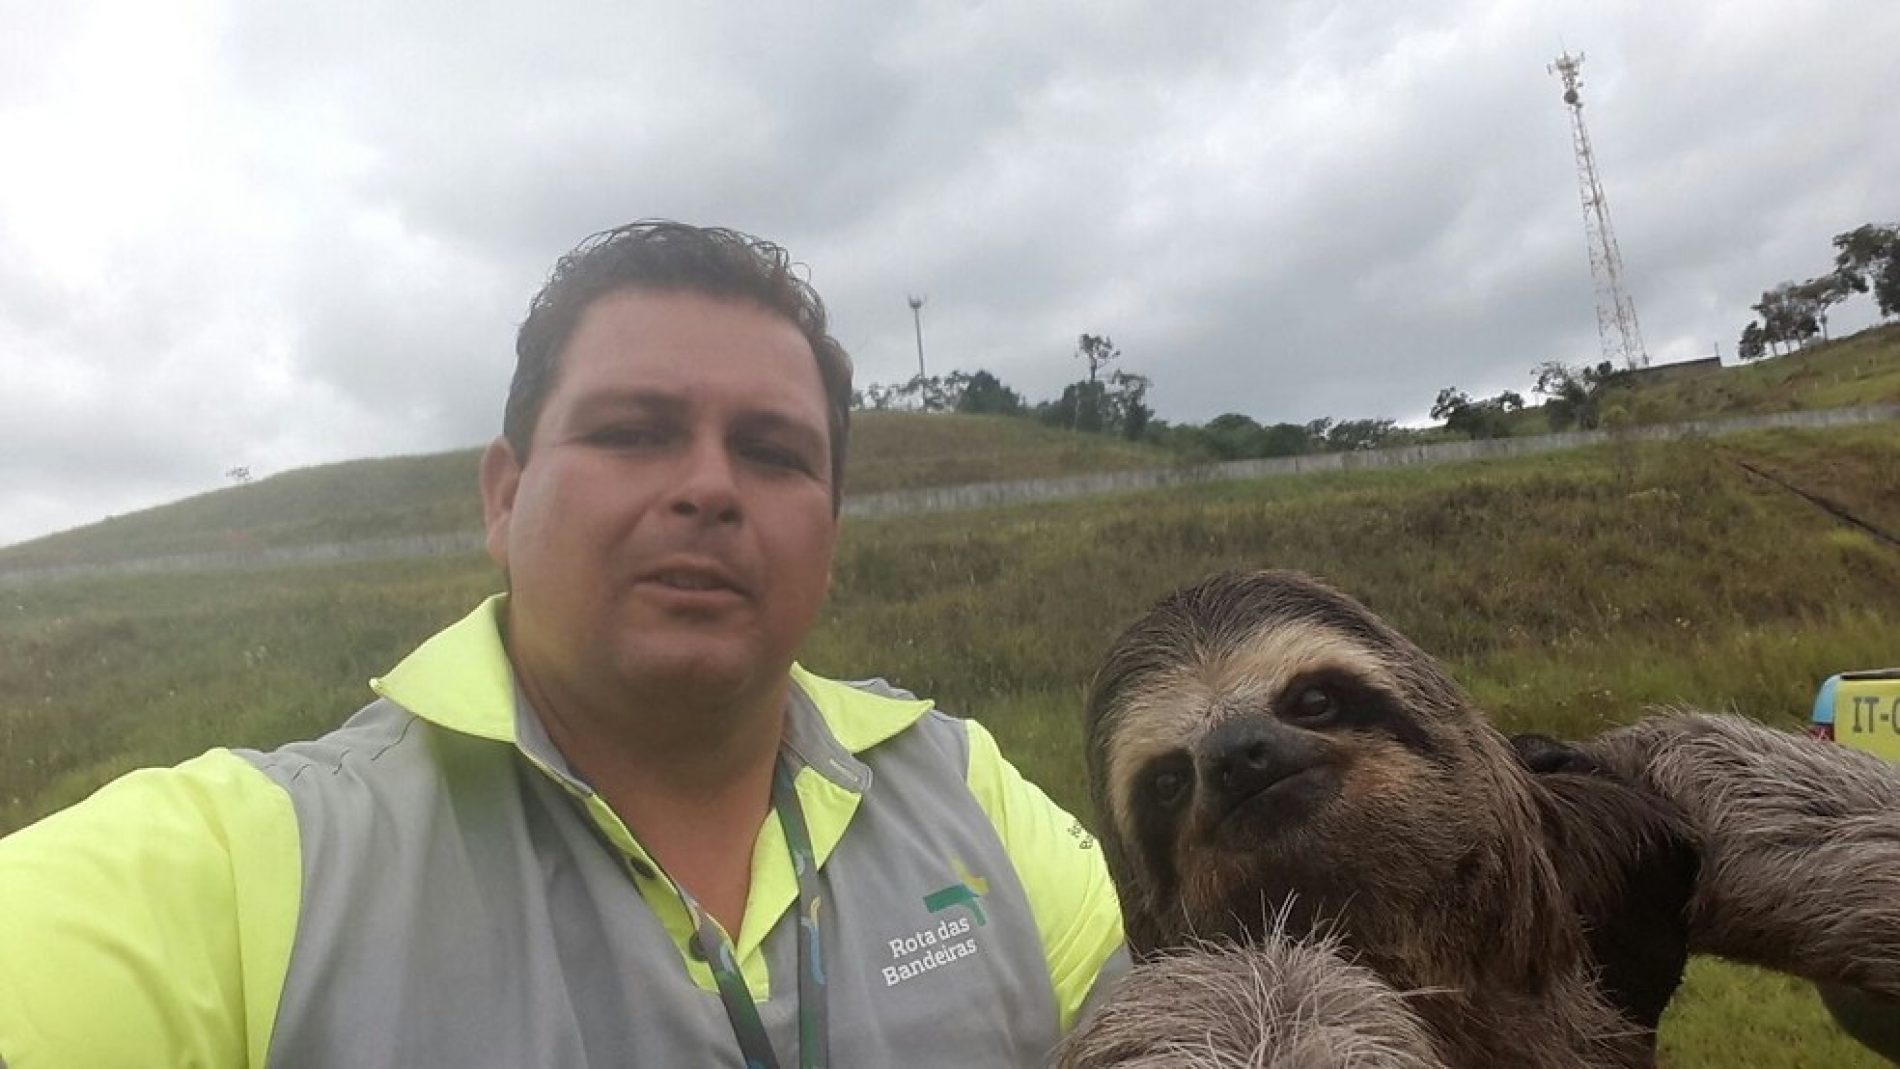 BRASIL: Bicho-preguiça ‘faz selfie’ com funcionário de concessionária de rodovia em Igaratá